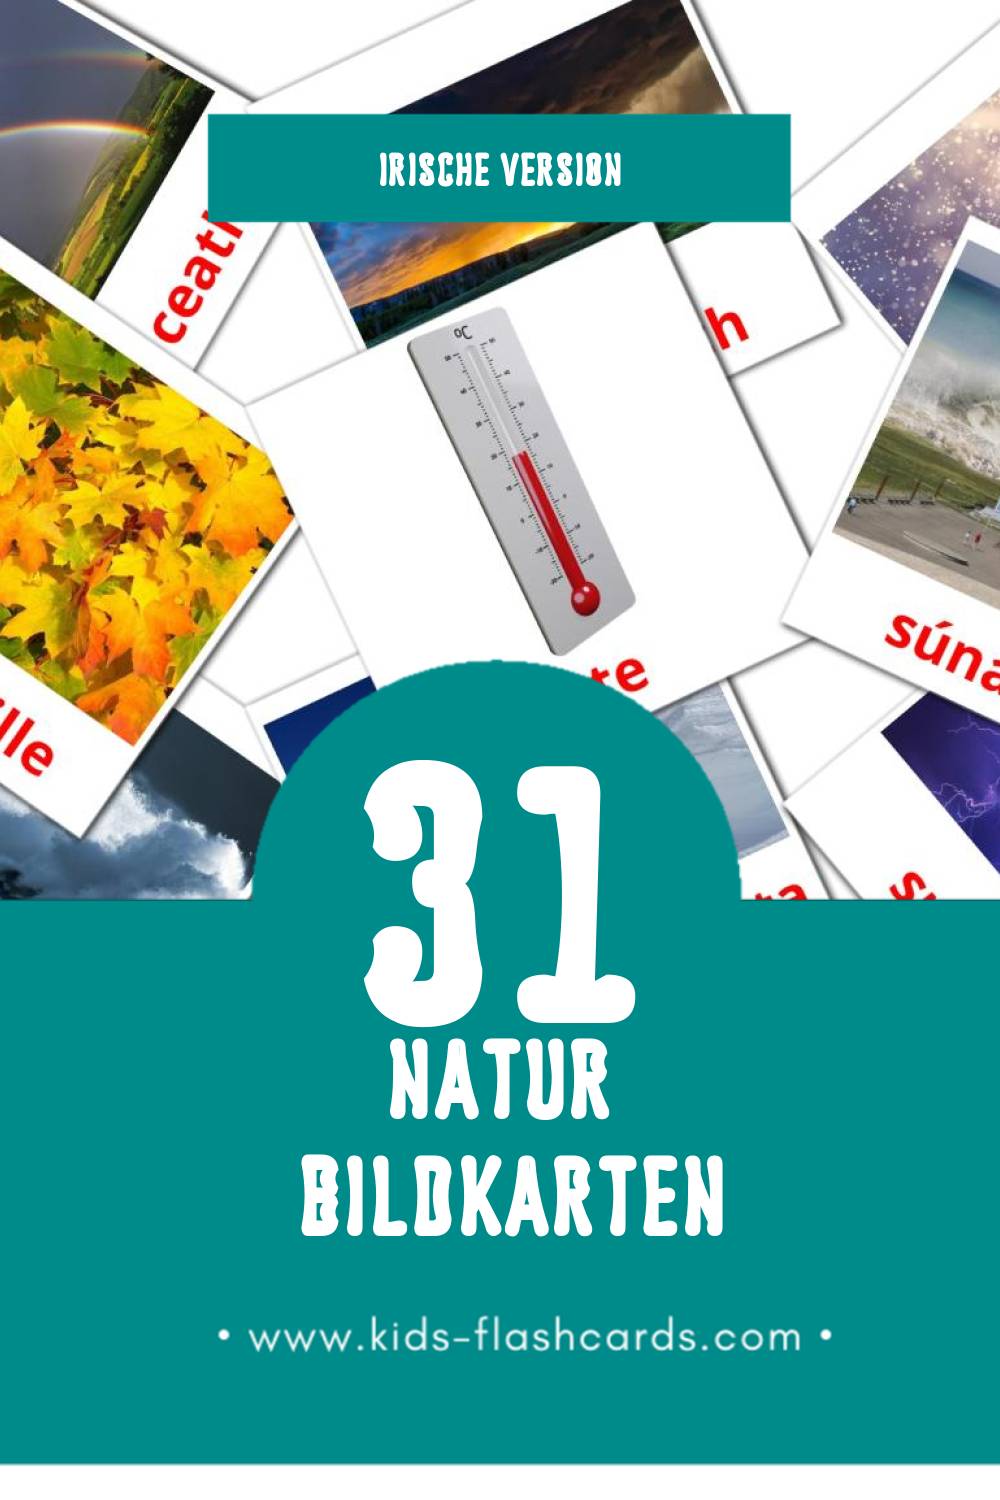 Visual Nádúr Flashcards für Kleinkinder (31 Karten in Irisch)